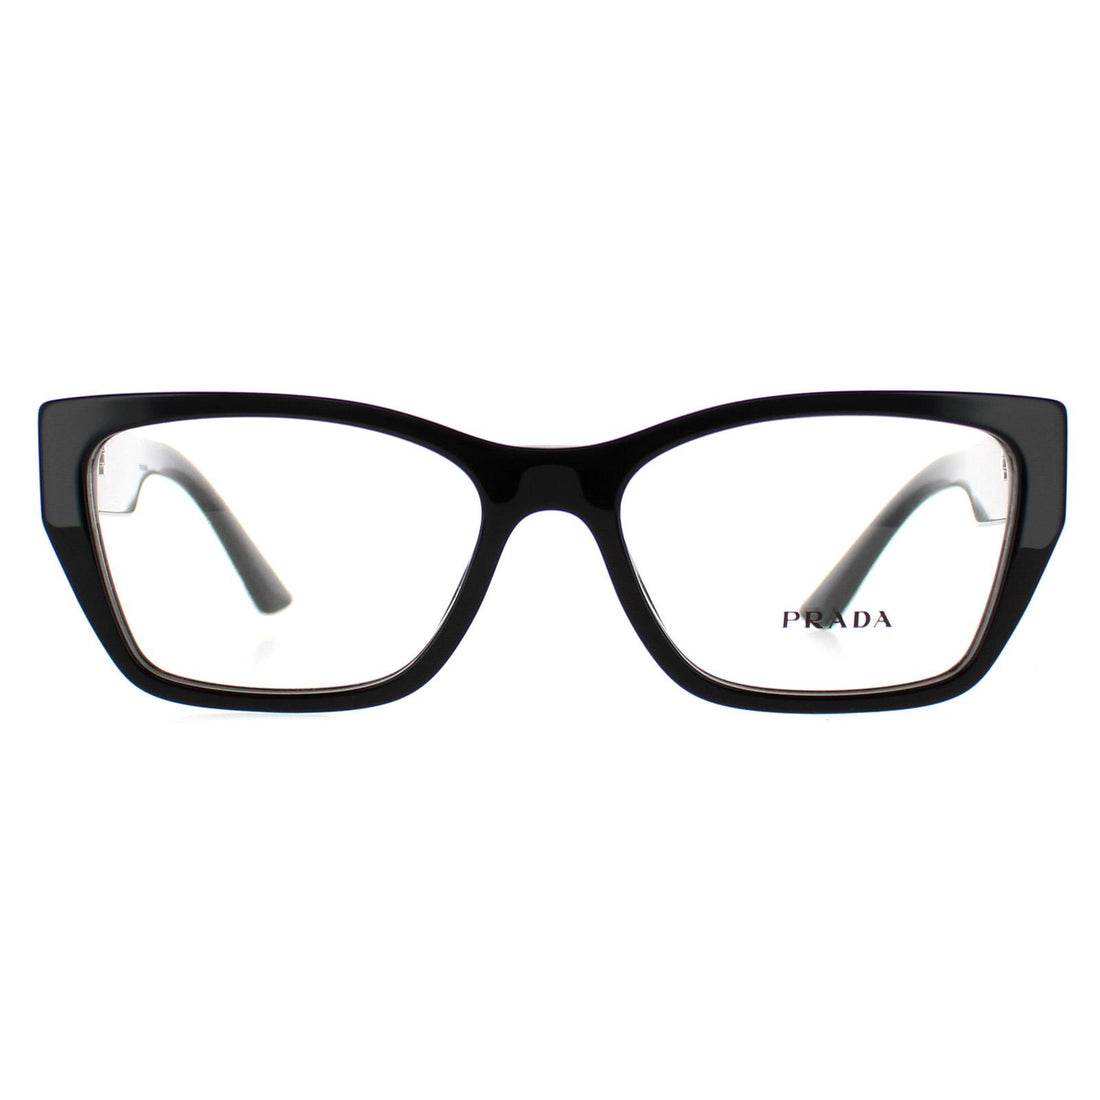 Prada PR11YV Glasses Frames Black 52